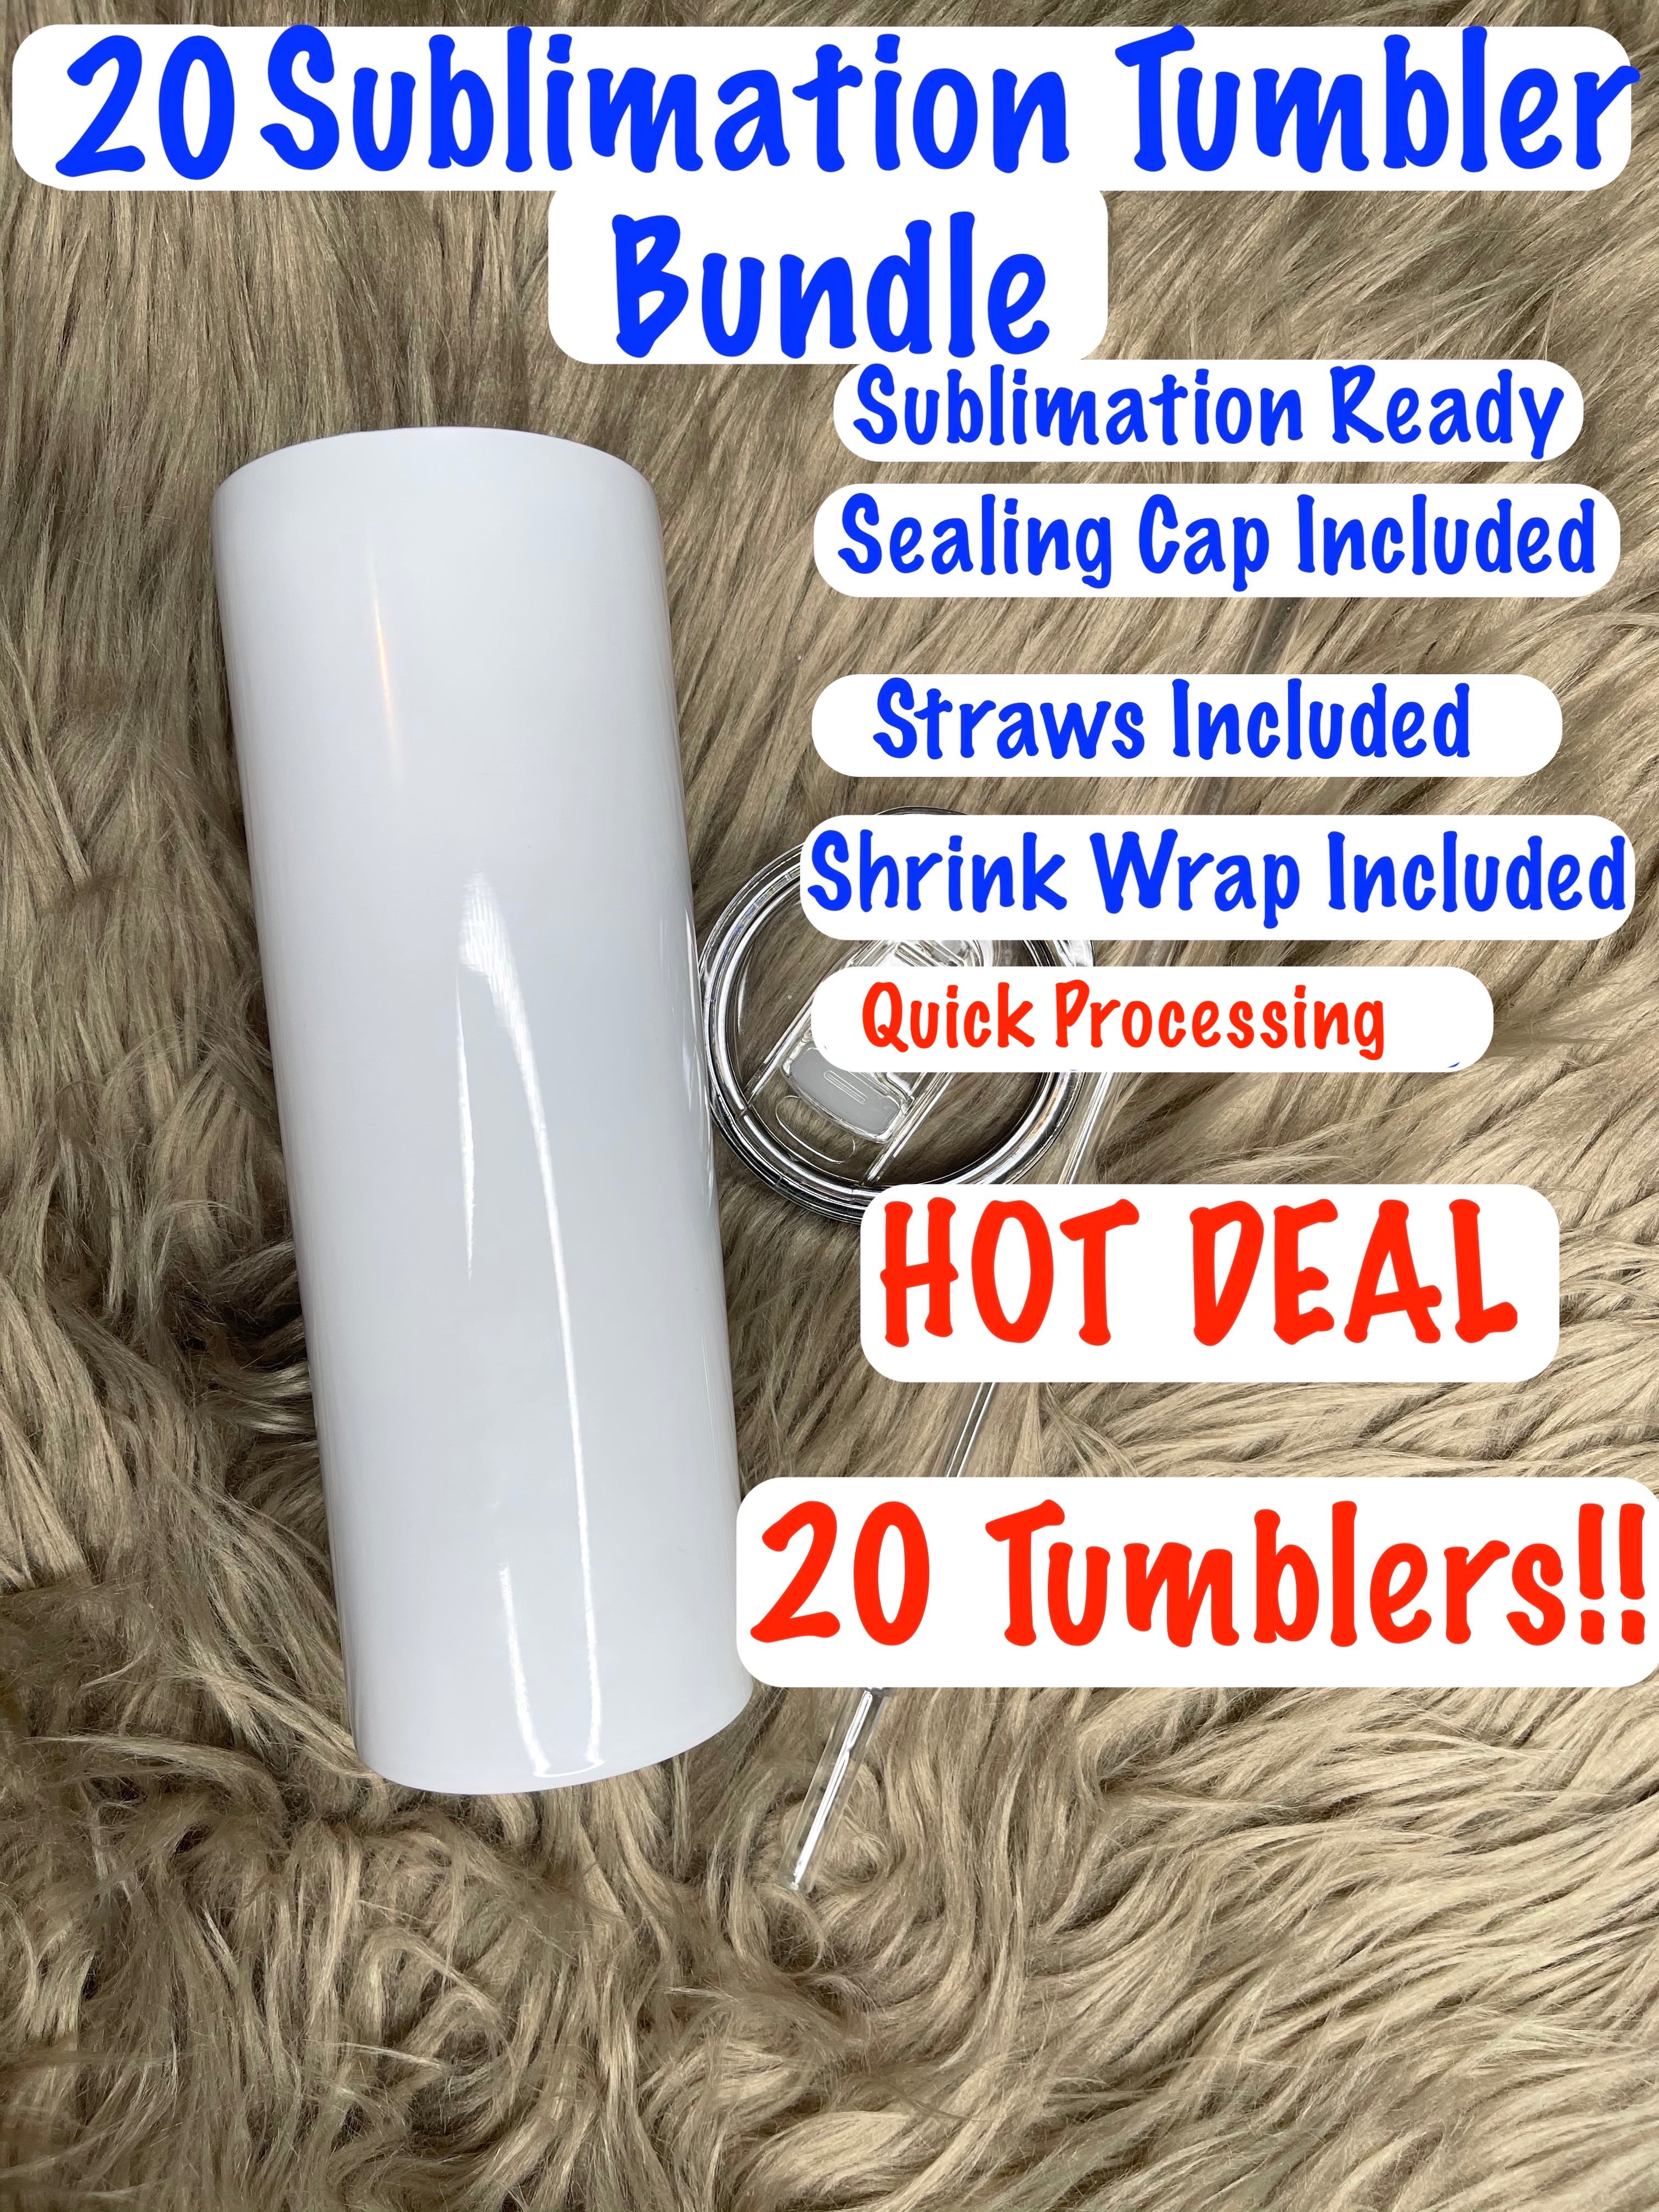 A-SUB 20 OZ Sublimation Tumbler 1 pack